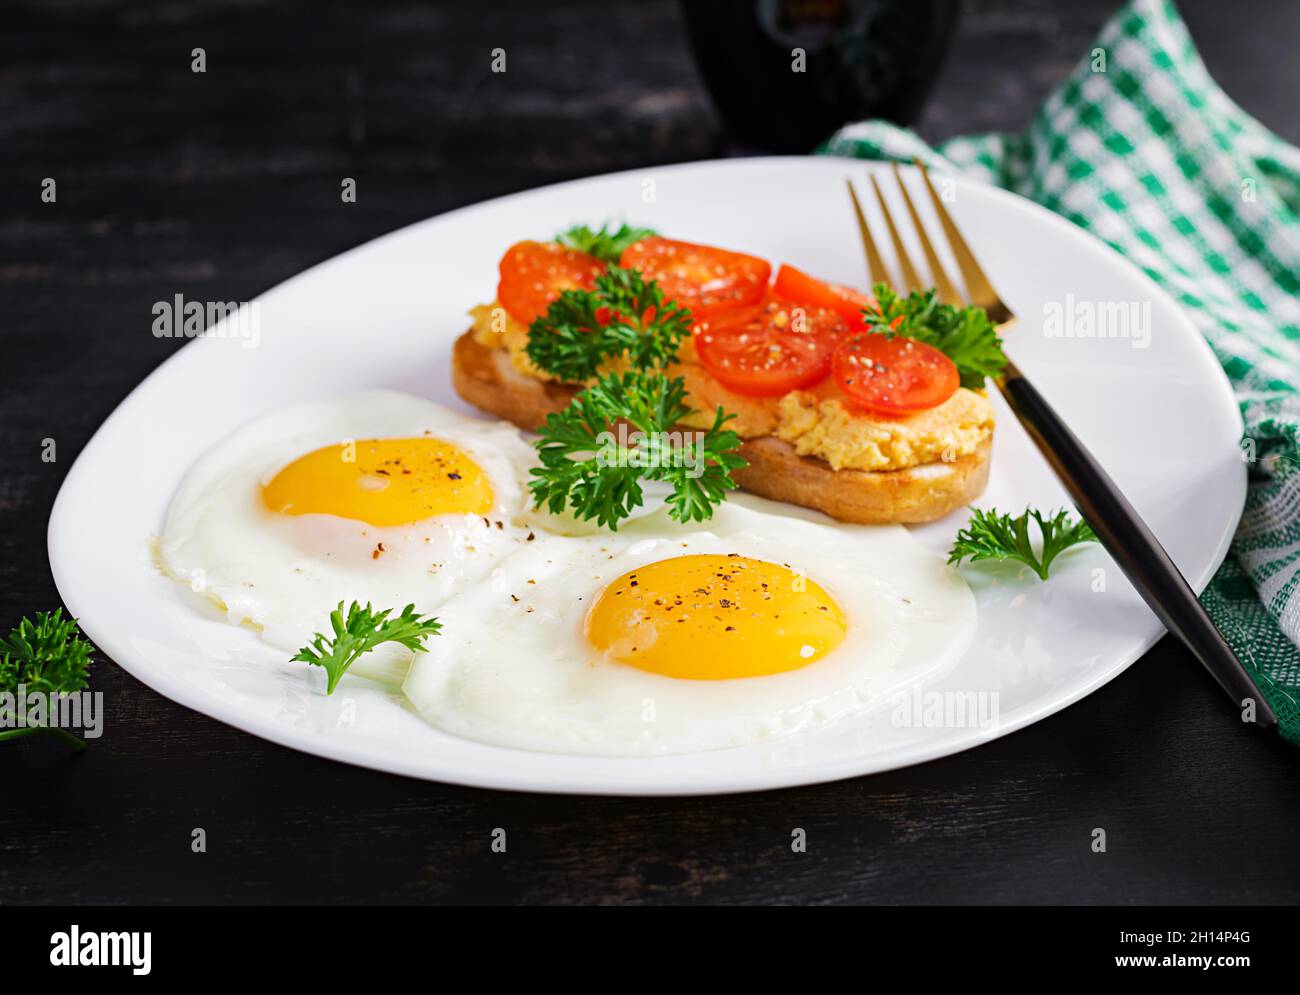 Des œufs frits et un sandwich au pâté de poulet grillé sur fond sombre. Banque D'Images